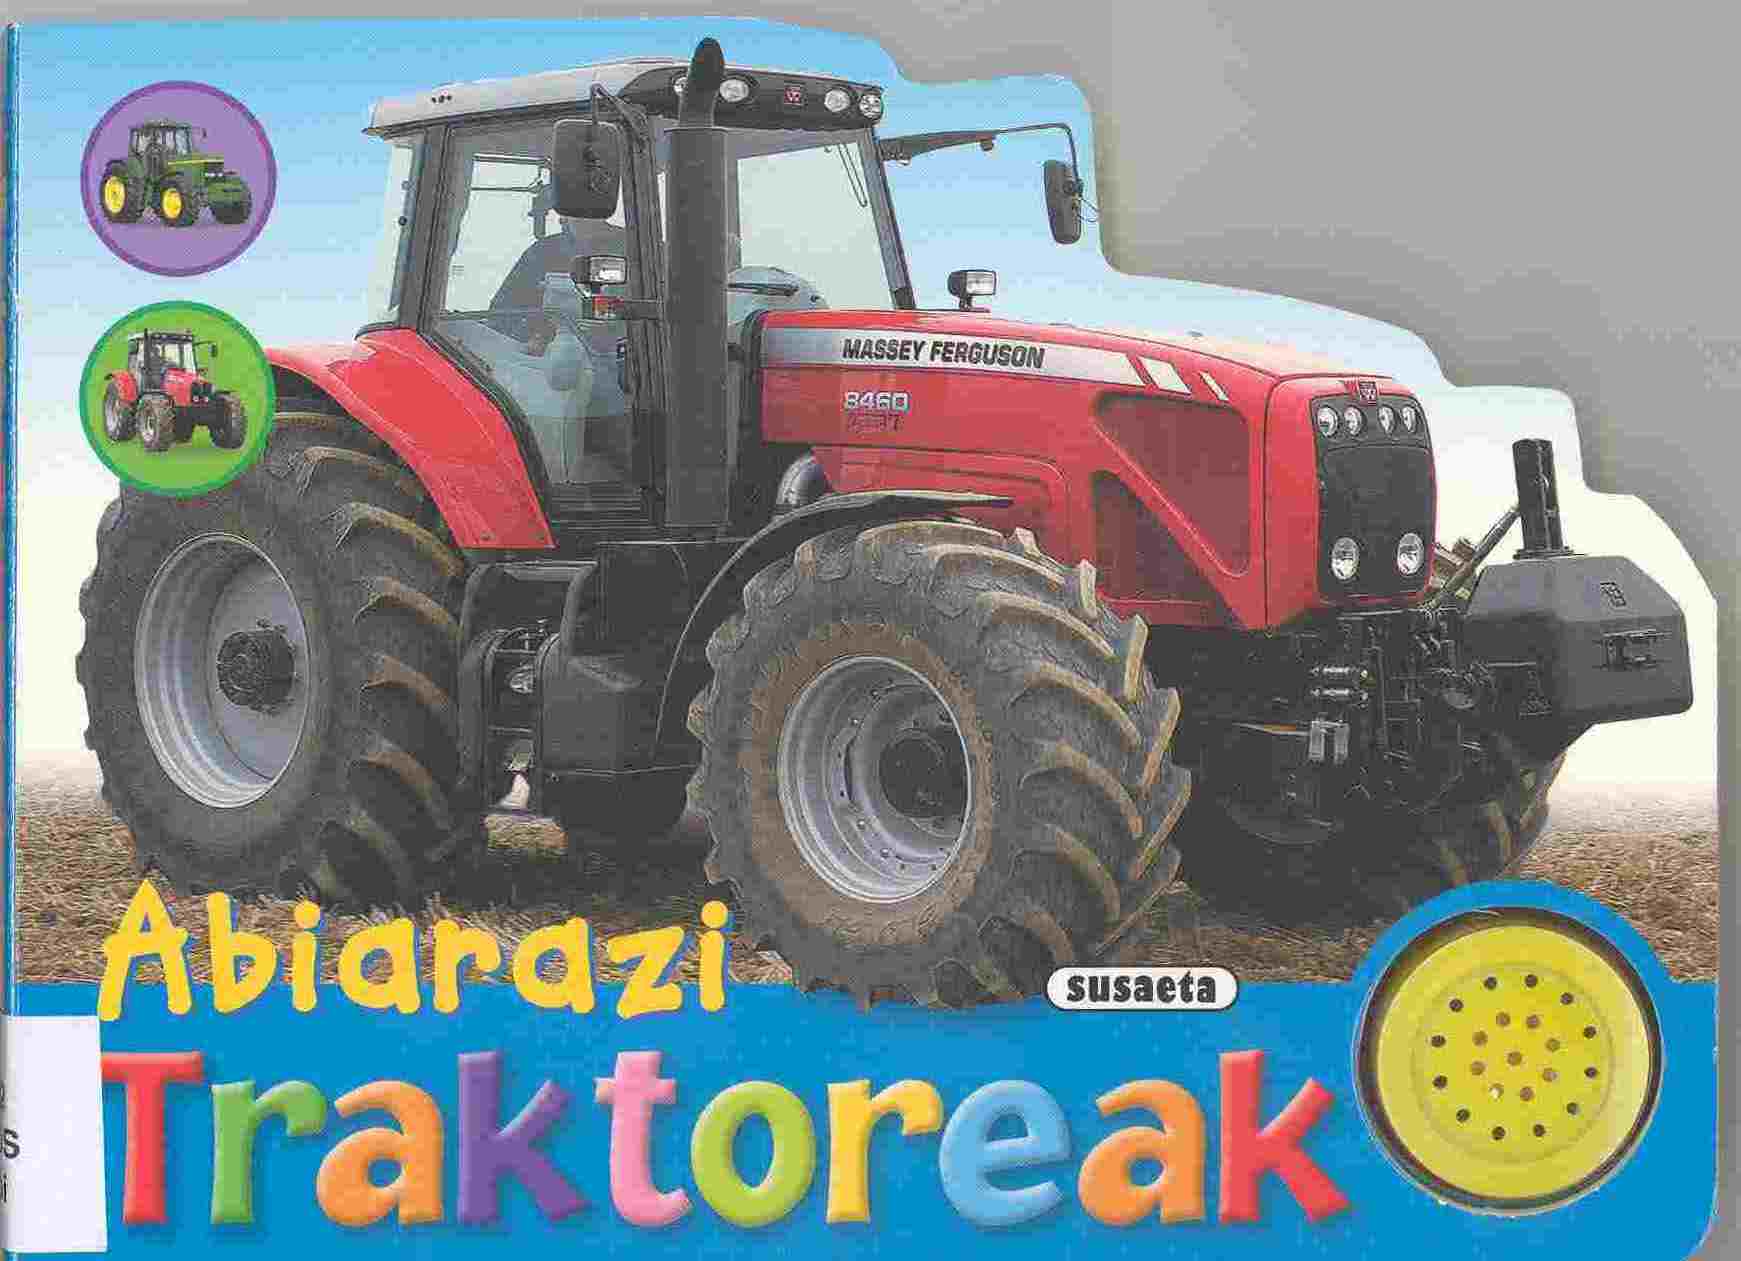 Abiarazi traktoreak